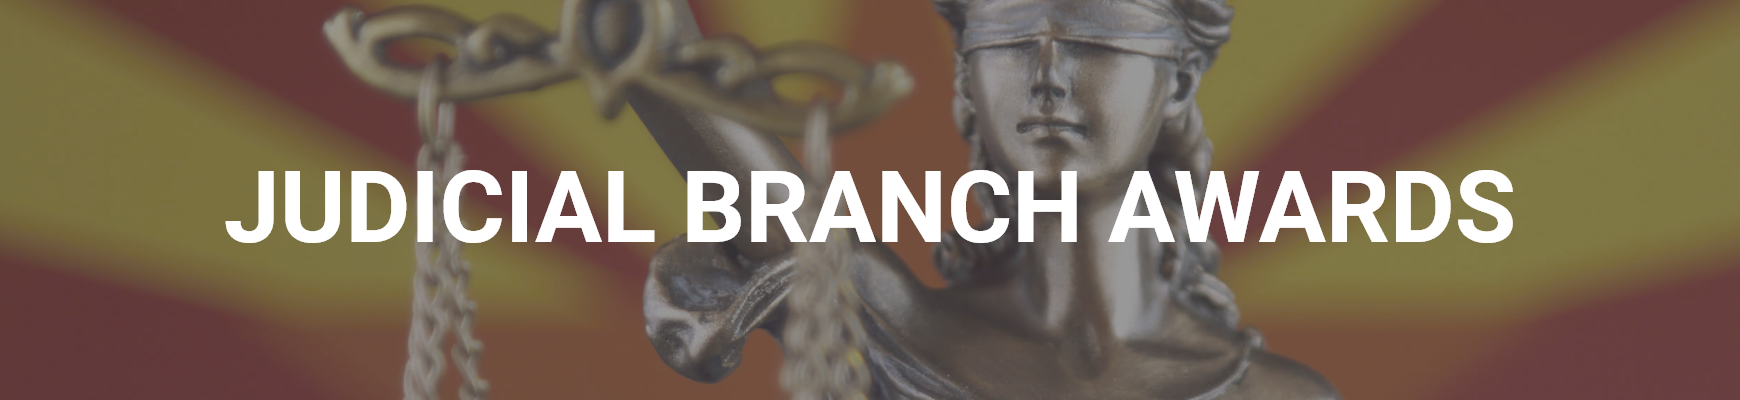 Judicial Branch Awards banner